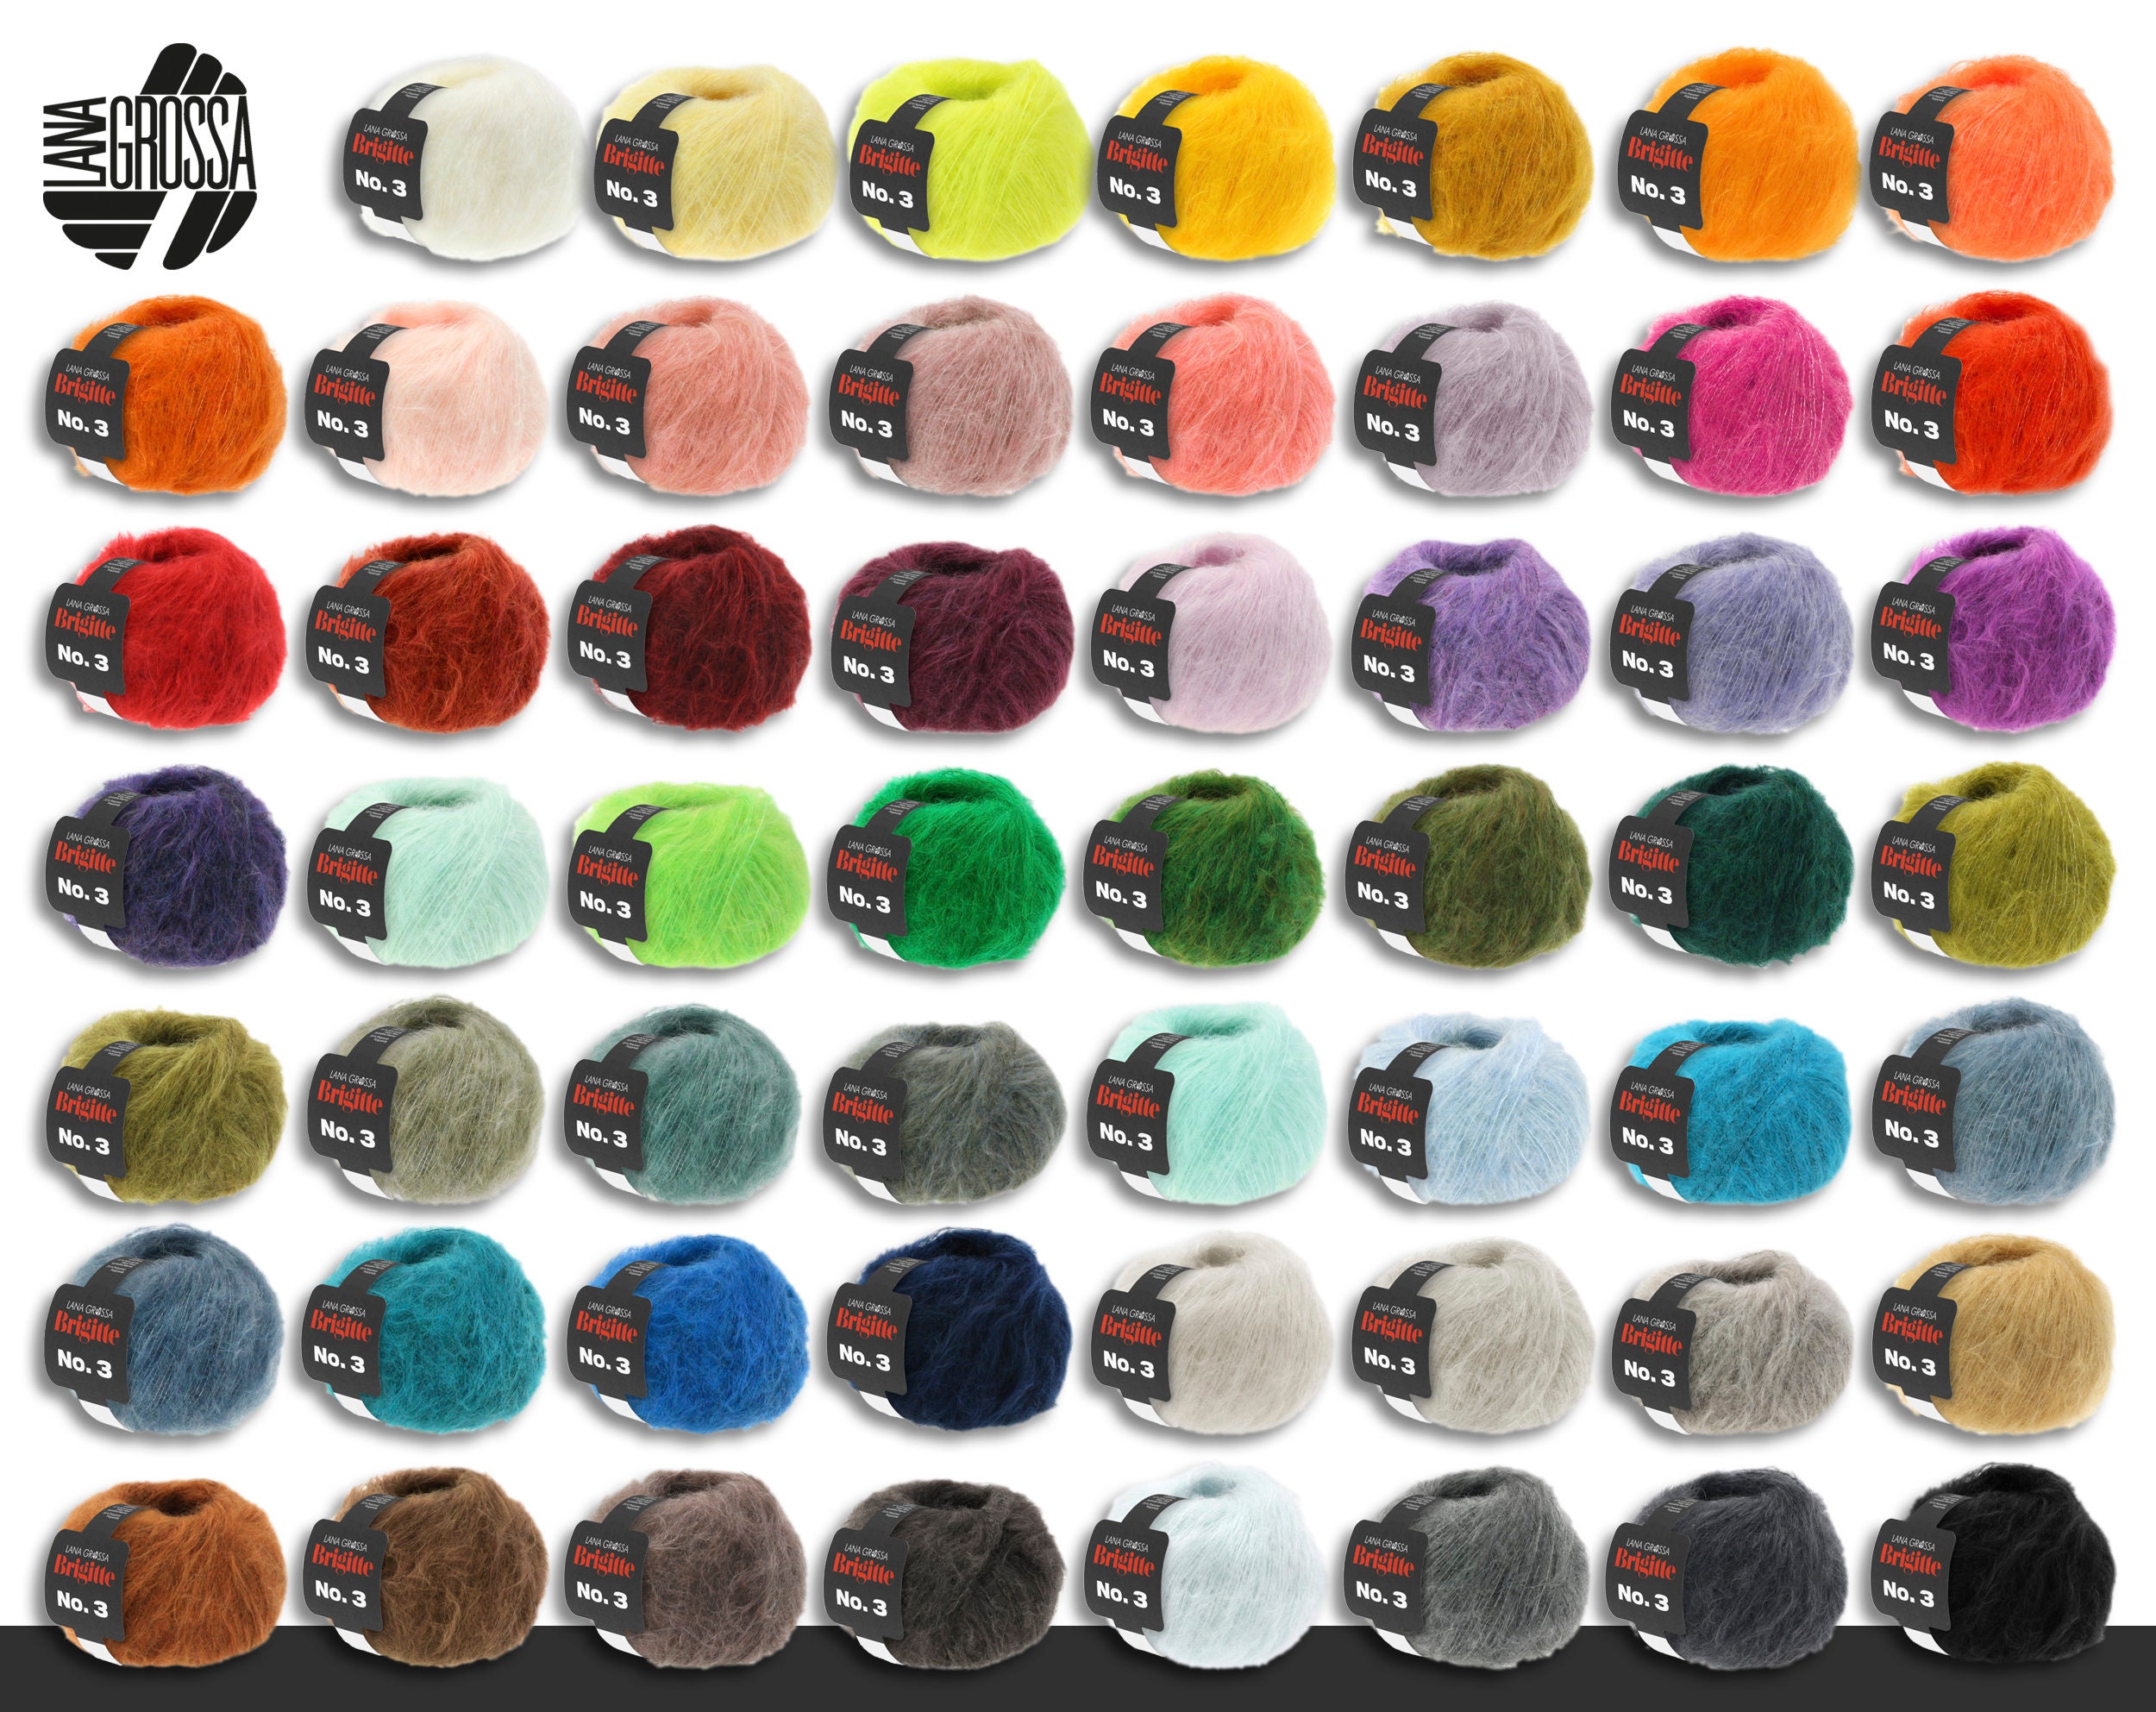 Lana Grossa 5 X 25 G Brigitte No. 3 Mohair Blend Mohair Virgin Wool  Polyamide Wool Yarn 49 Colors 